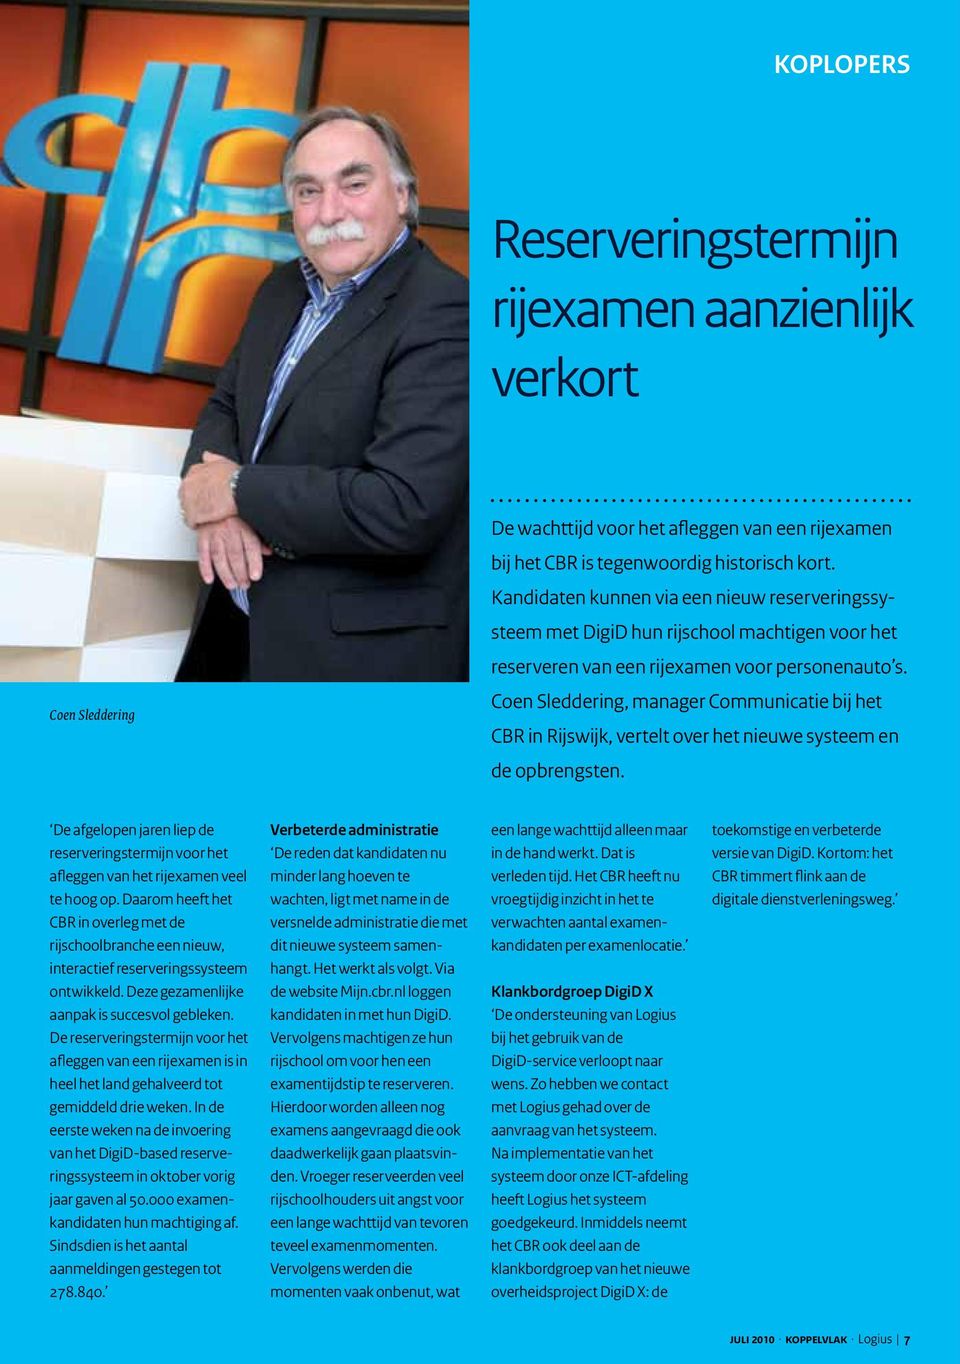 Coen Sleddering, manager Communicatie bij het CBR in Rijswijk, vertelt over het nieuwe systeem en de opbrengsten.